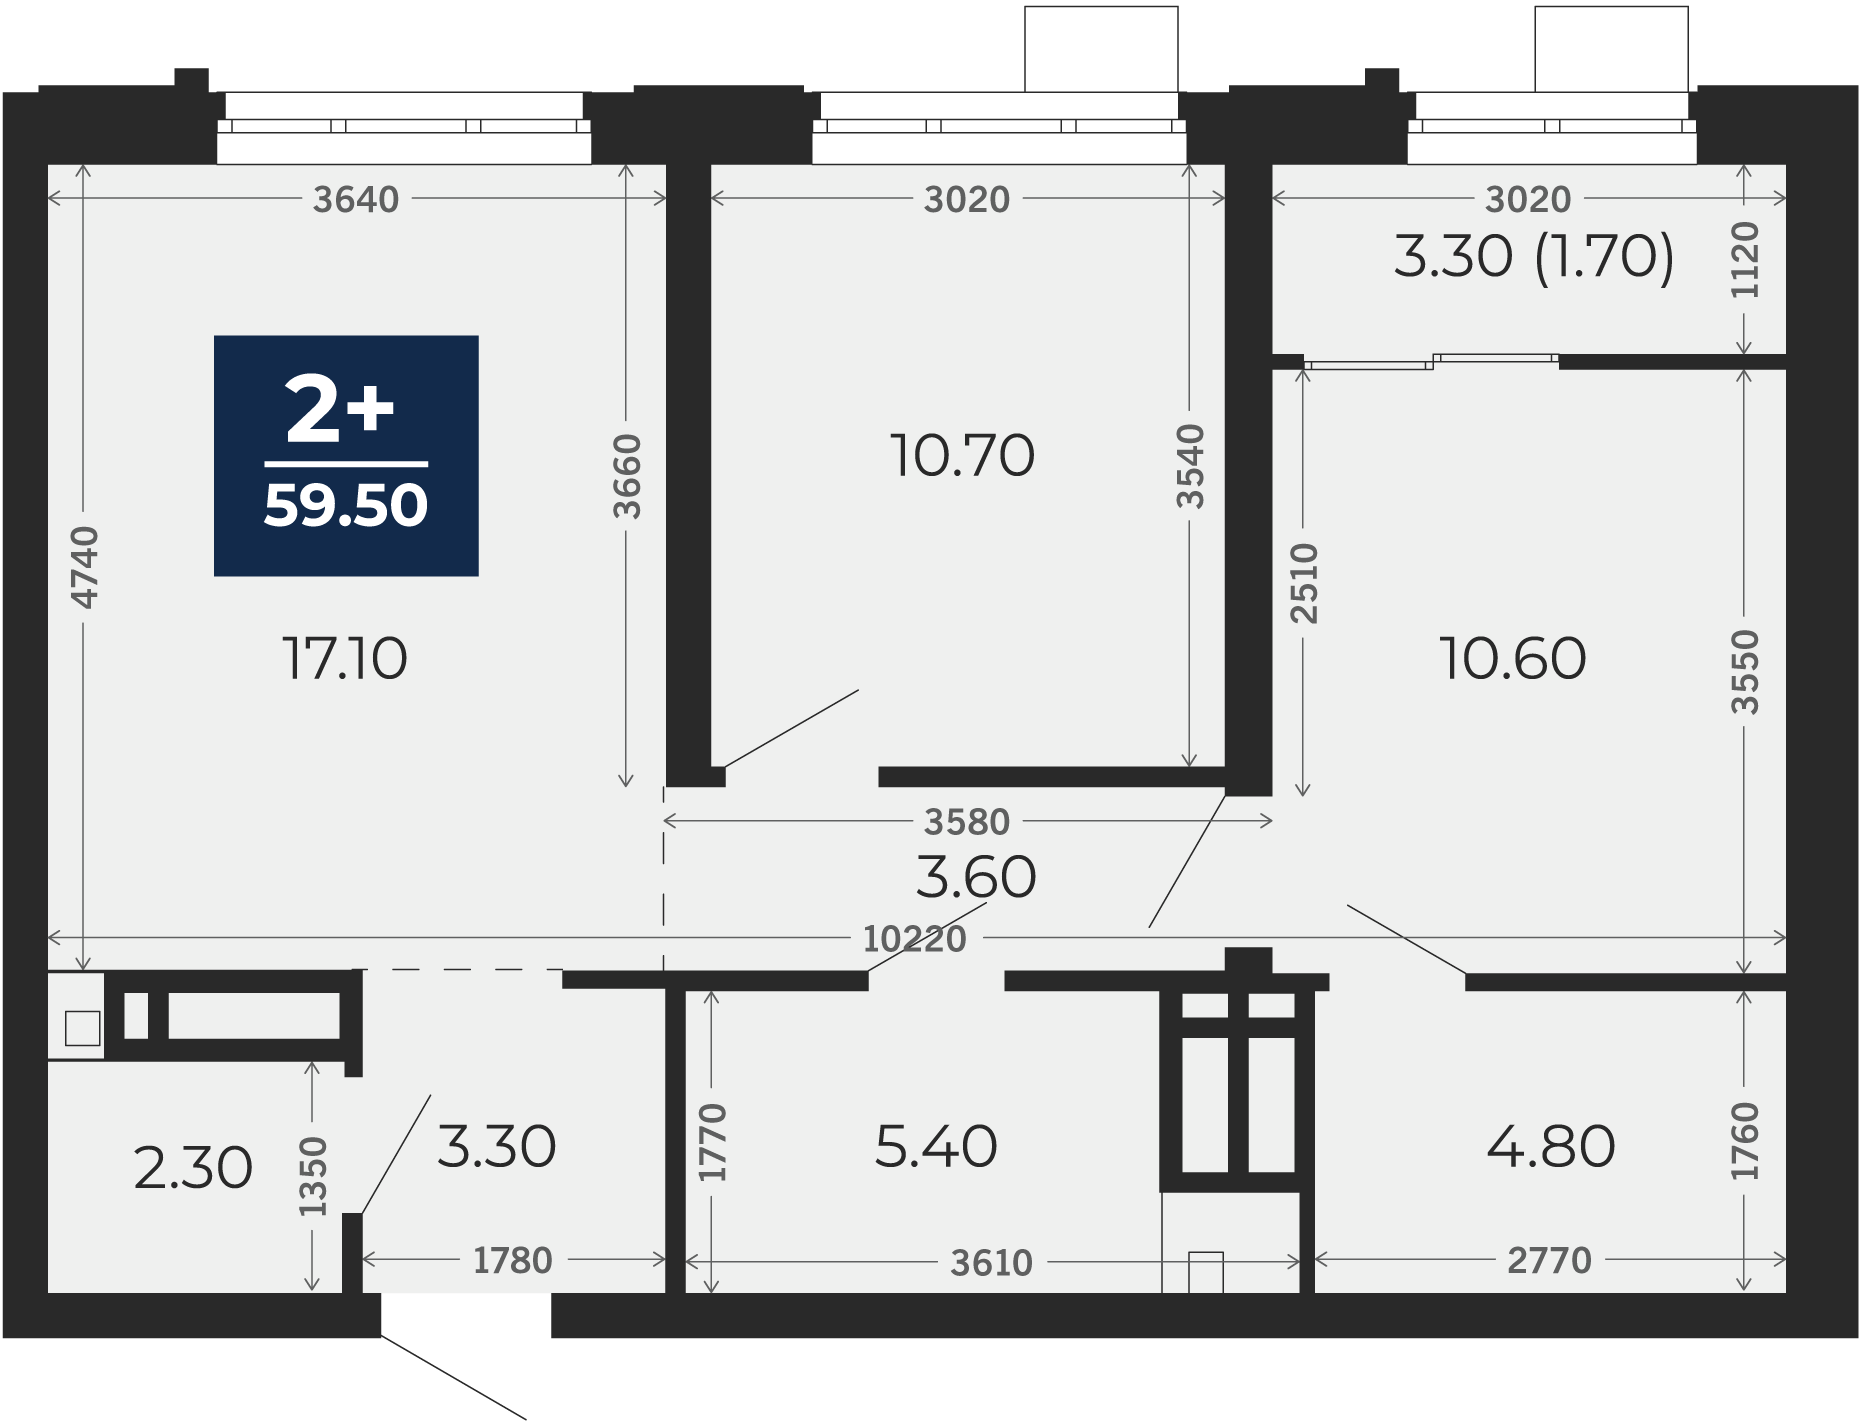 Квартира № 129, 2-комнатная, 59.5 кв. м, 6 этаж